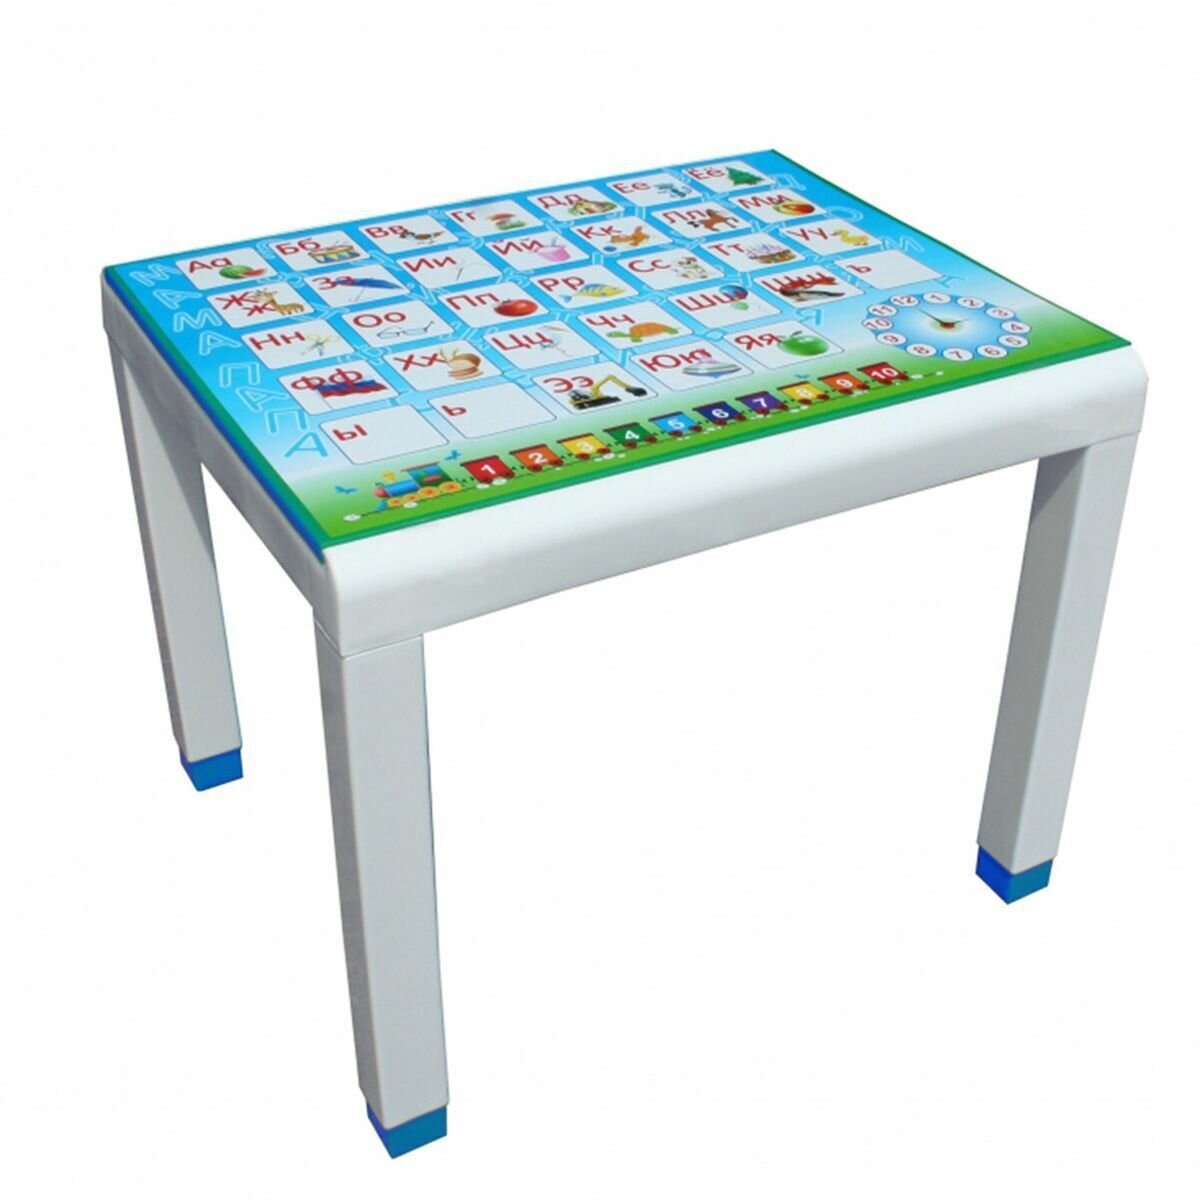 Столик детский пластик, 60х50х49 см, с деколью, голубой/синий, Стандарт Пластик Групп, 160-0057